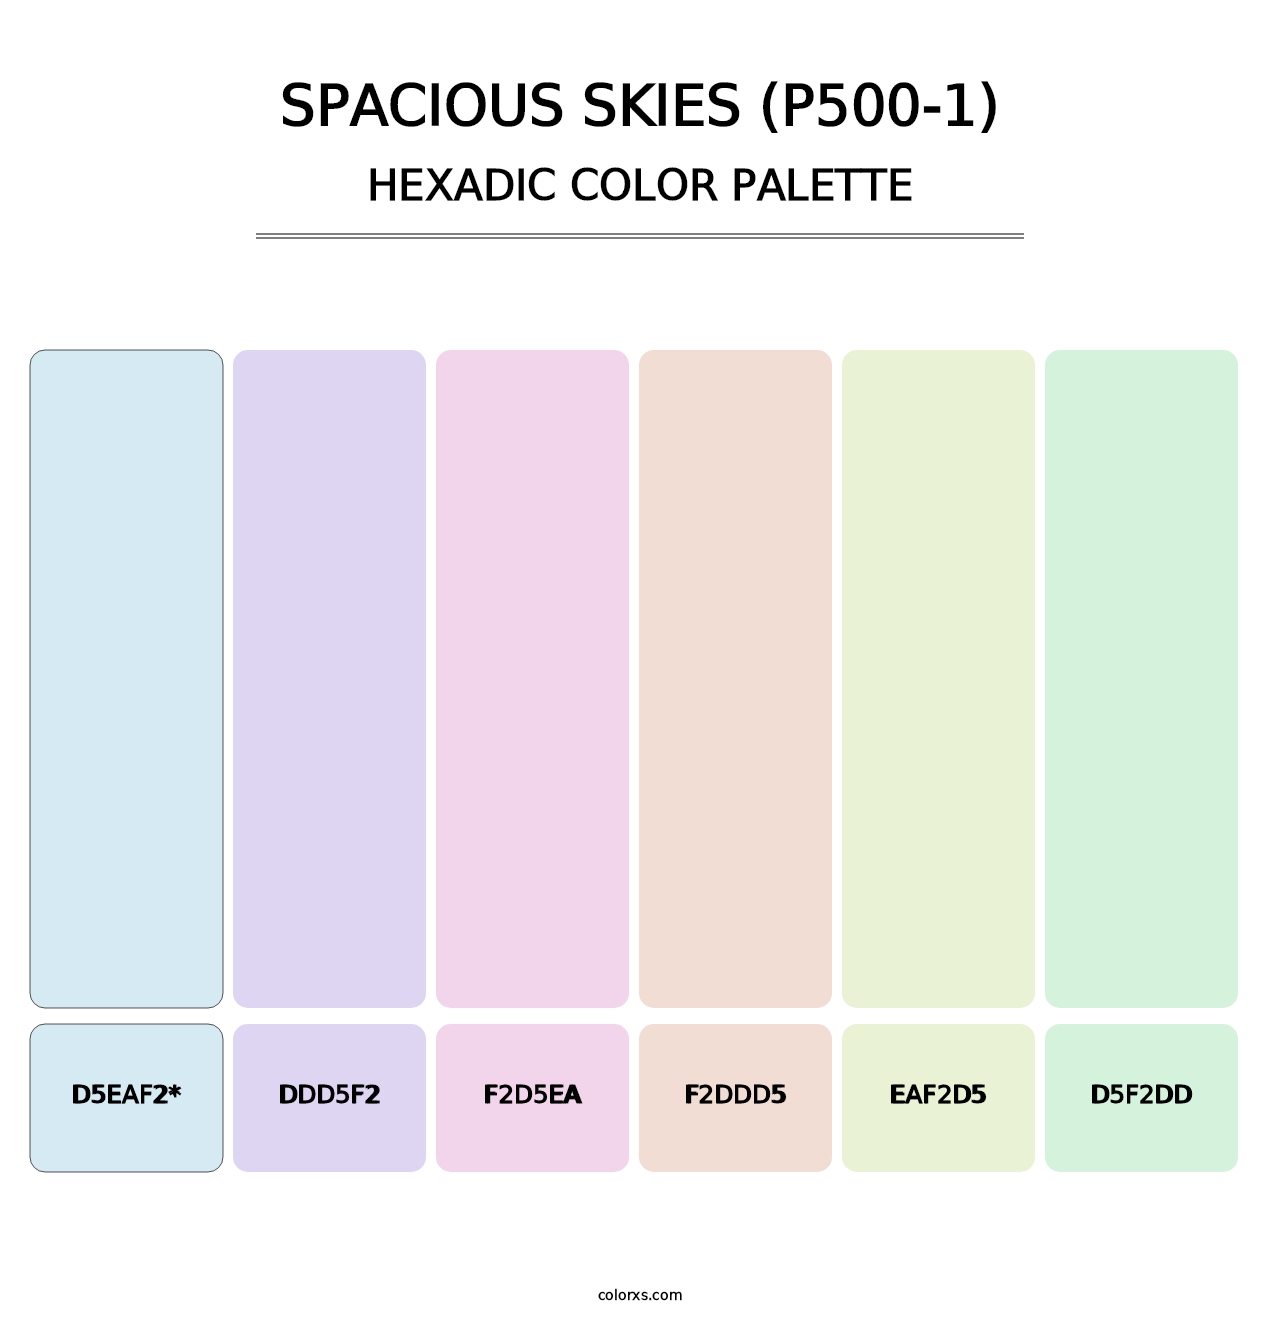 Spacious Skies (P500-1) - Hexadic Color Palette